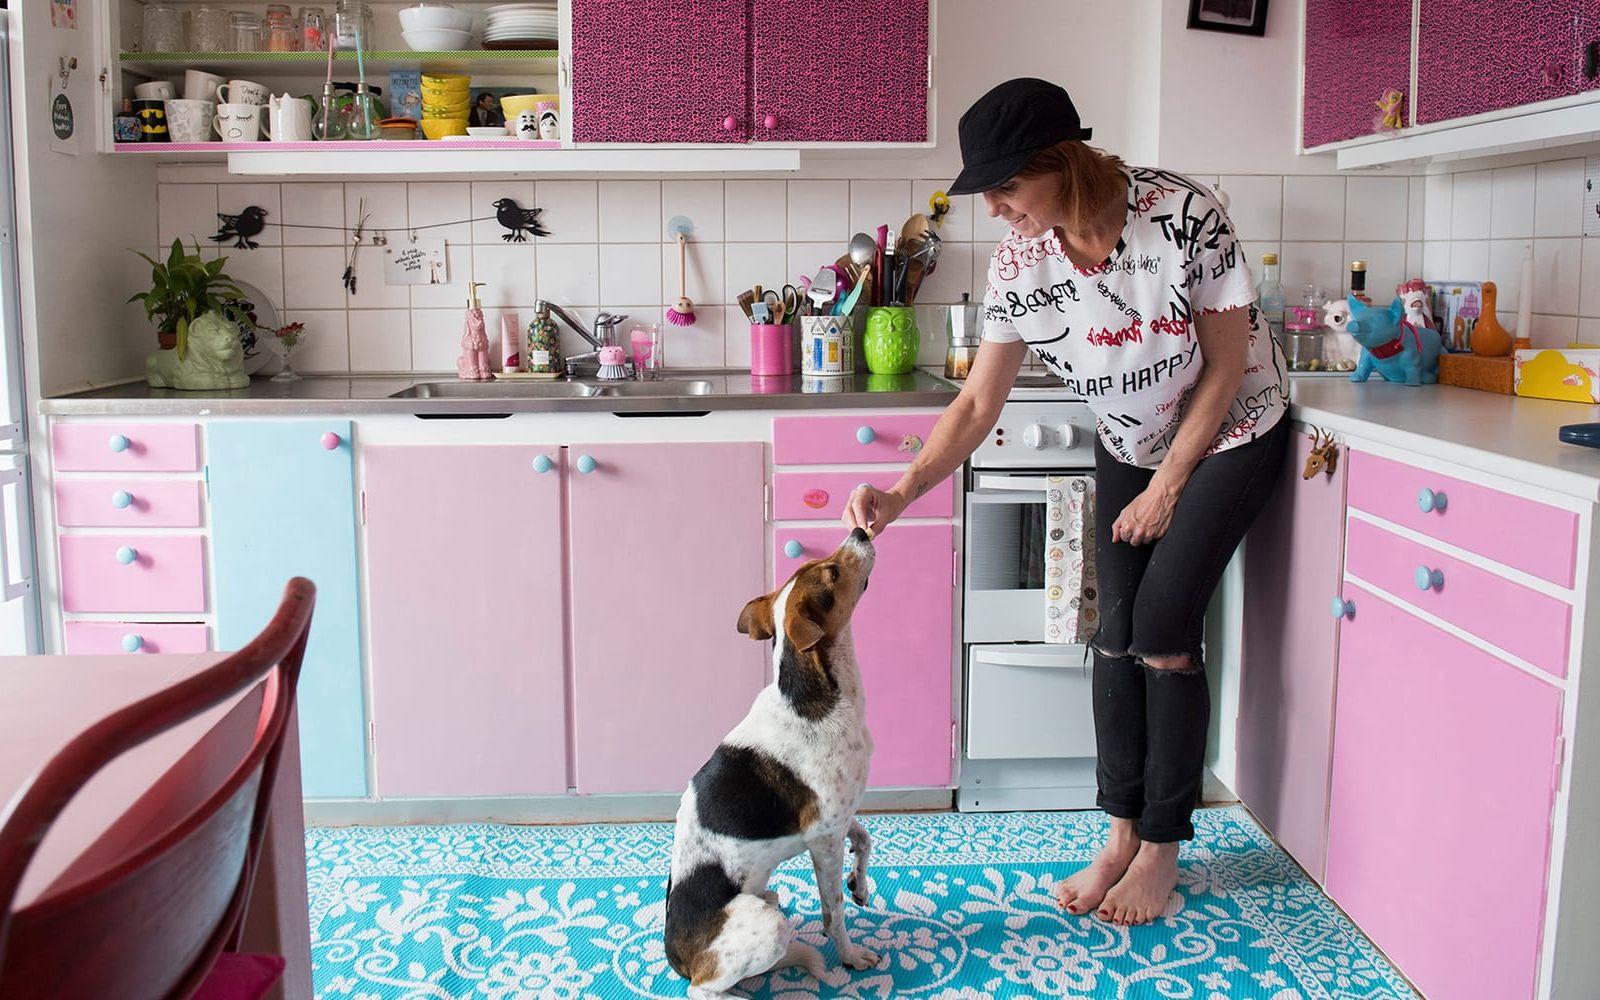 Jonna Johansson bor med sin dotter Stella och hunden Rocky i en hyresetta. Hon har satt sin personliga prägel på lägenheten med roliga prylar och mycket färg. Foto: Fredrik Sandberg/TT